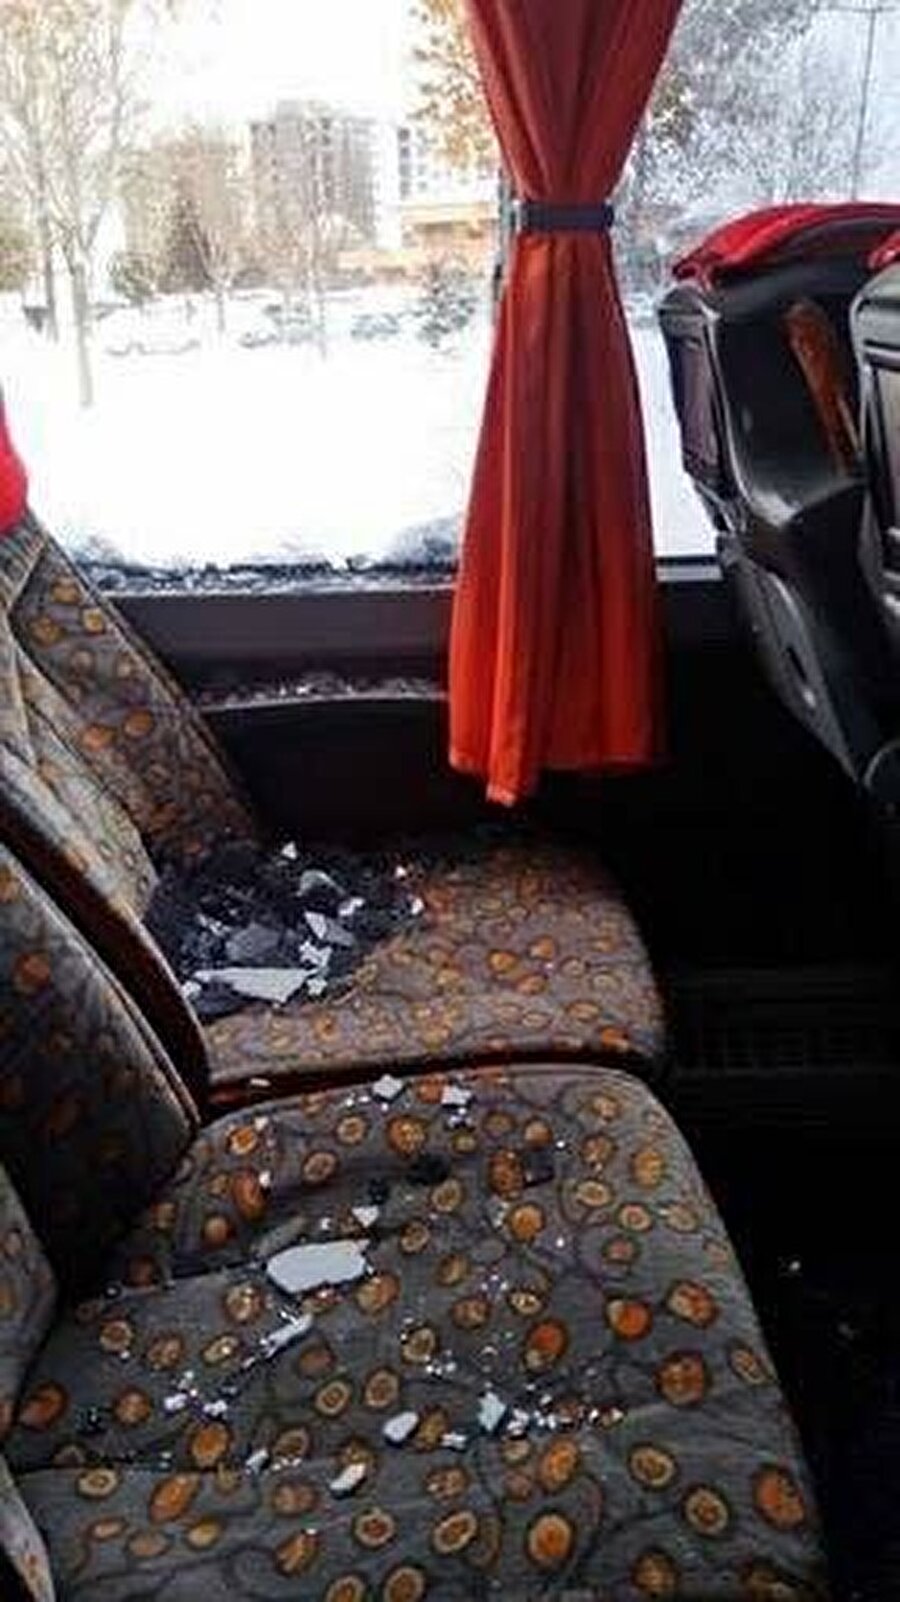 Olayda takım otobüsünde bulunan hiç kimse yaralanmadı. 